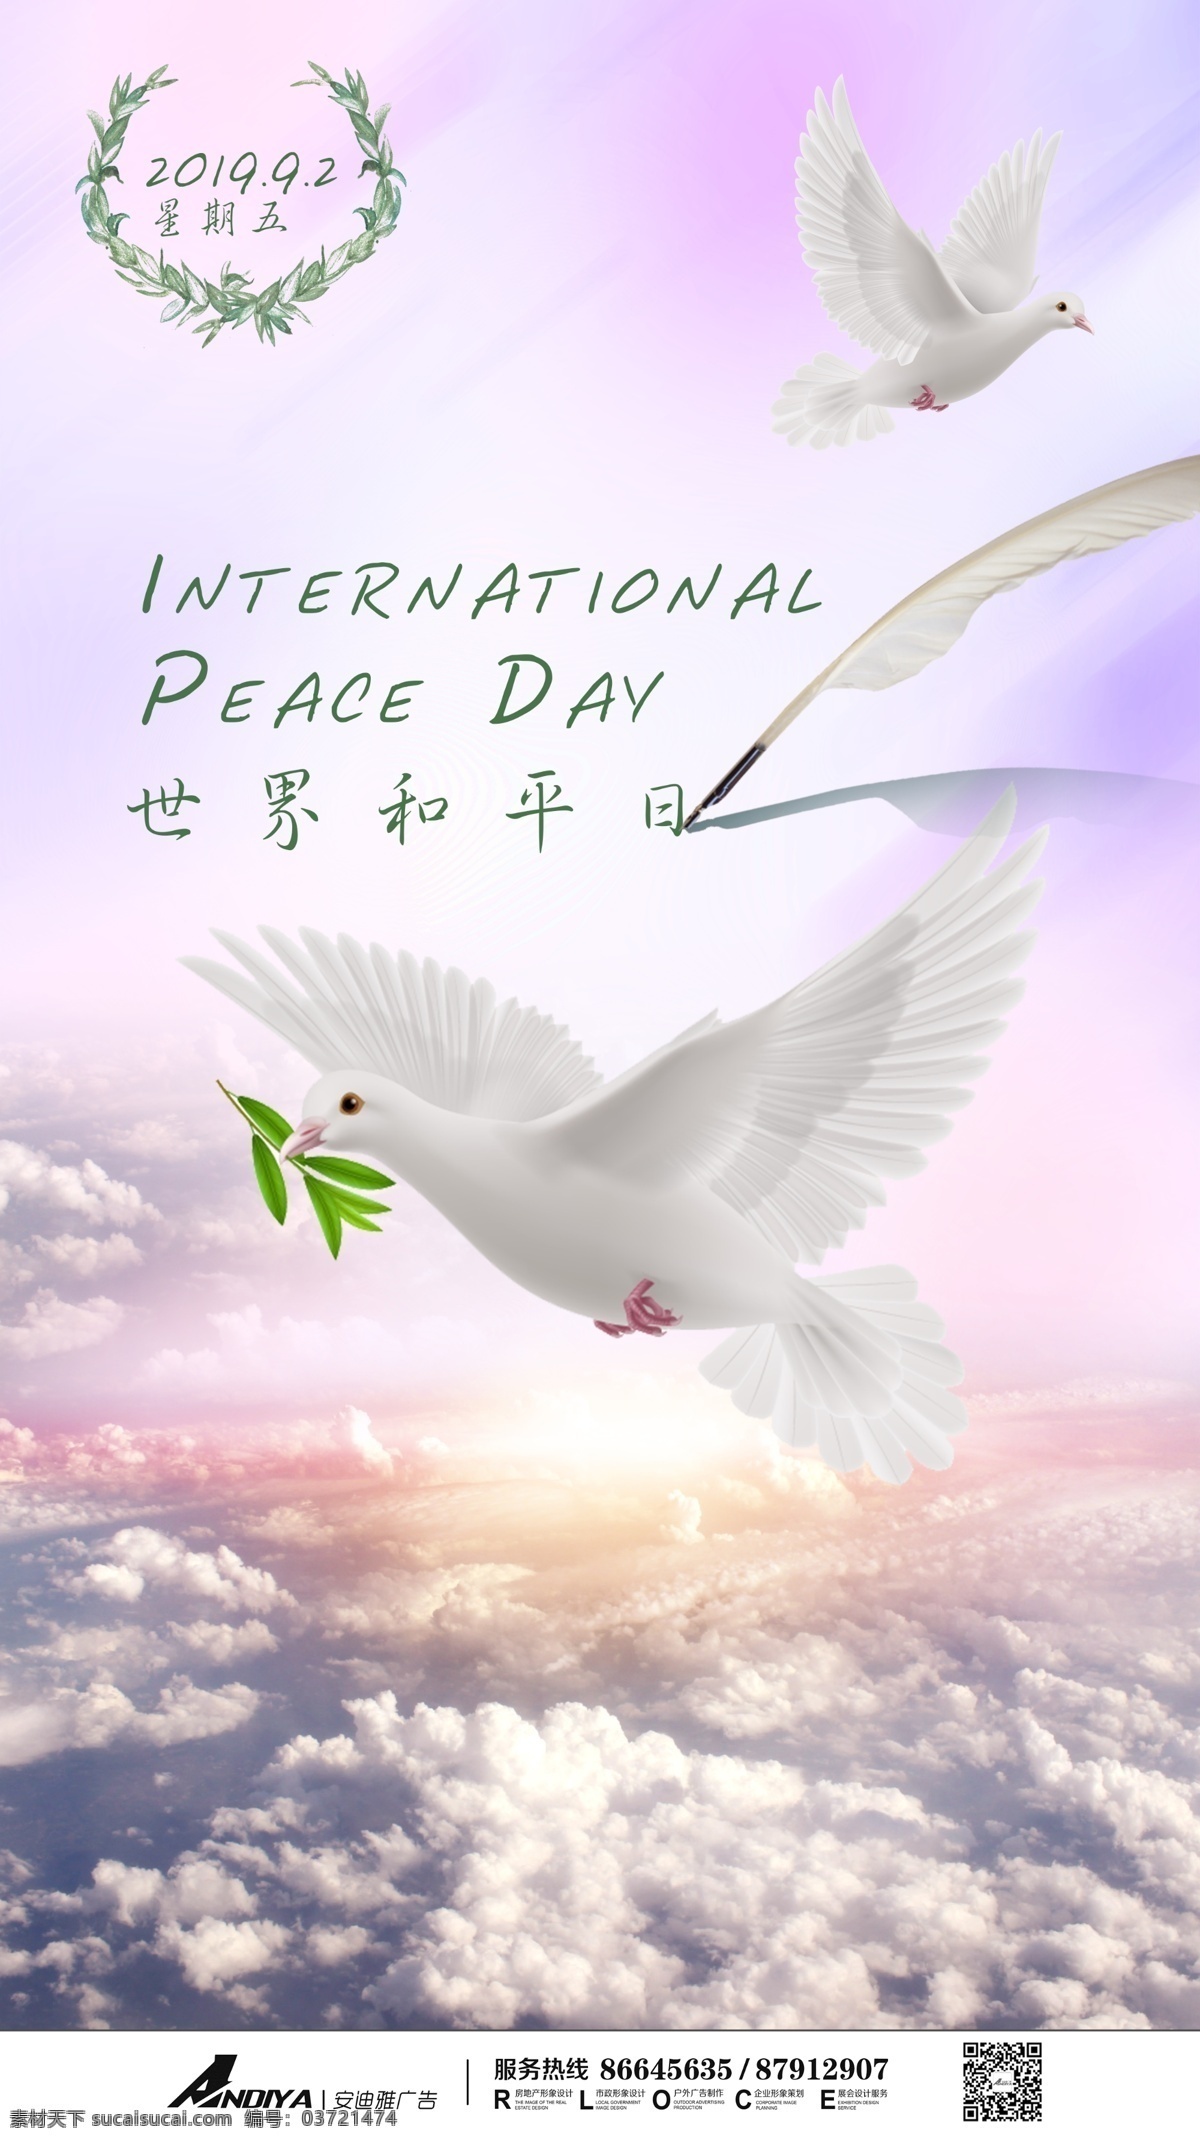 世界 平日 微 推 画面 世界和平日 微推 和平鸽 橄榄枝 海报